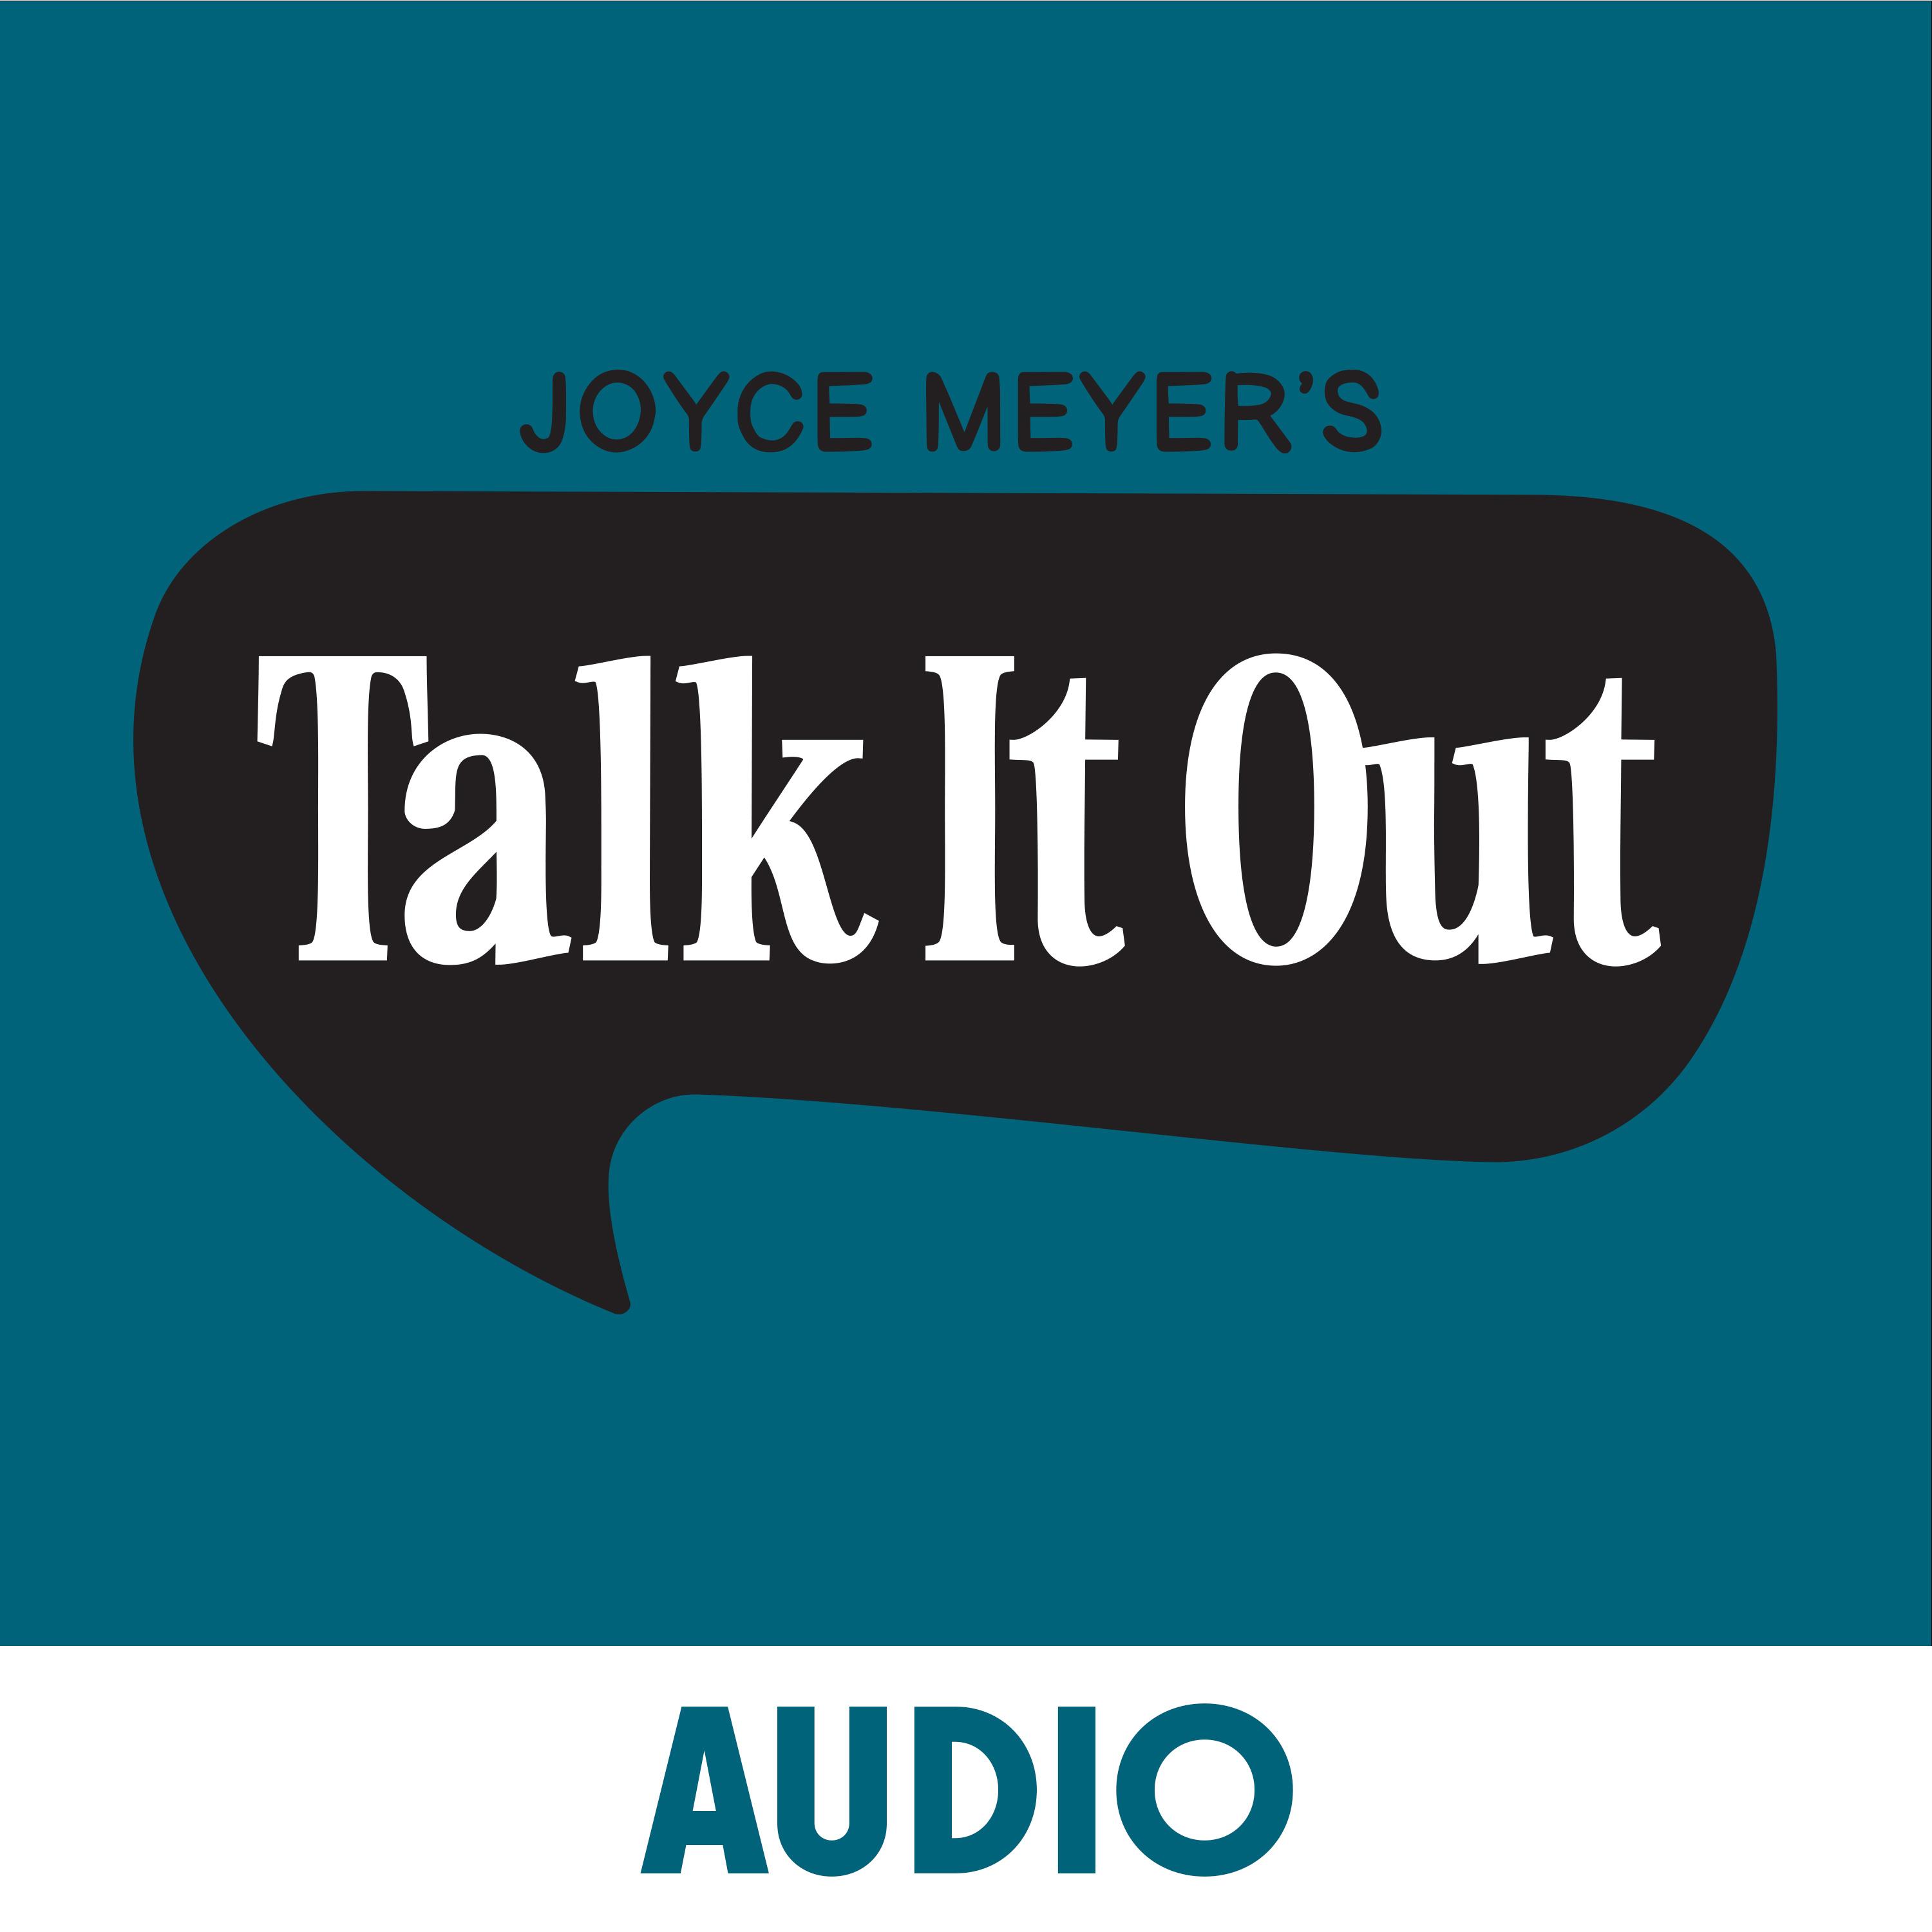 Jealous & Judgmental Attitudes - Pt 2, Joyce Meyer